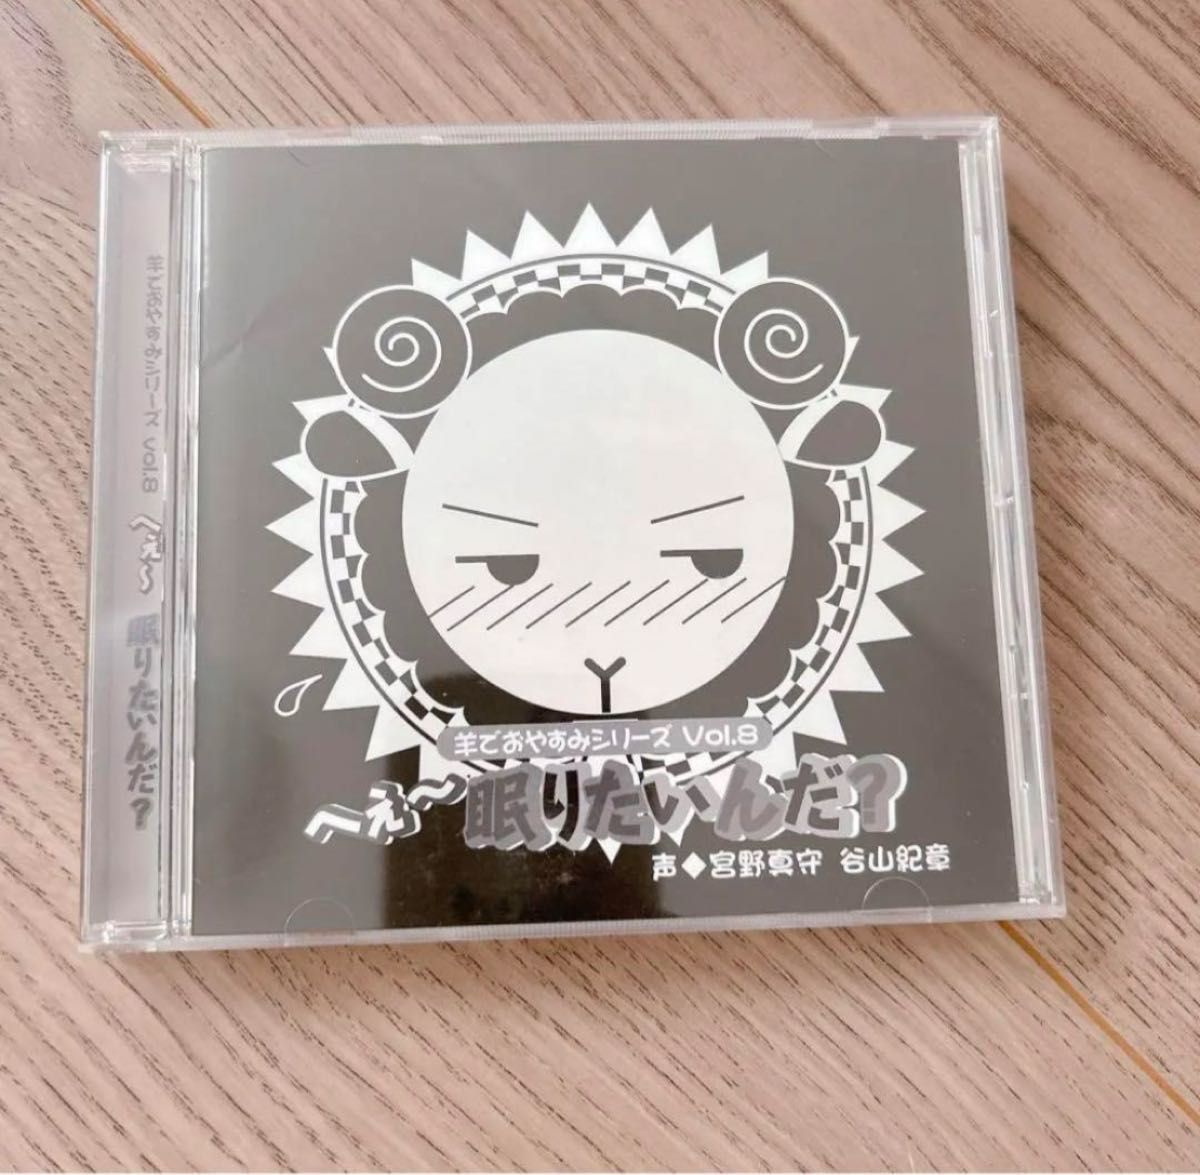 宮野真守, 谷山紀章 羊でおやすみシリーズ Vol.8 「へぇ~眠りたいんだ?」CD